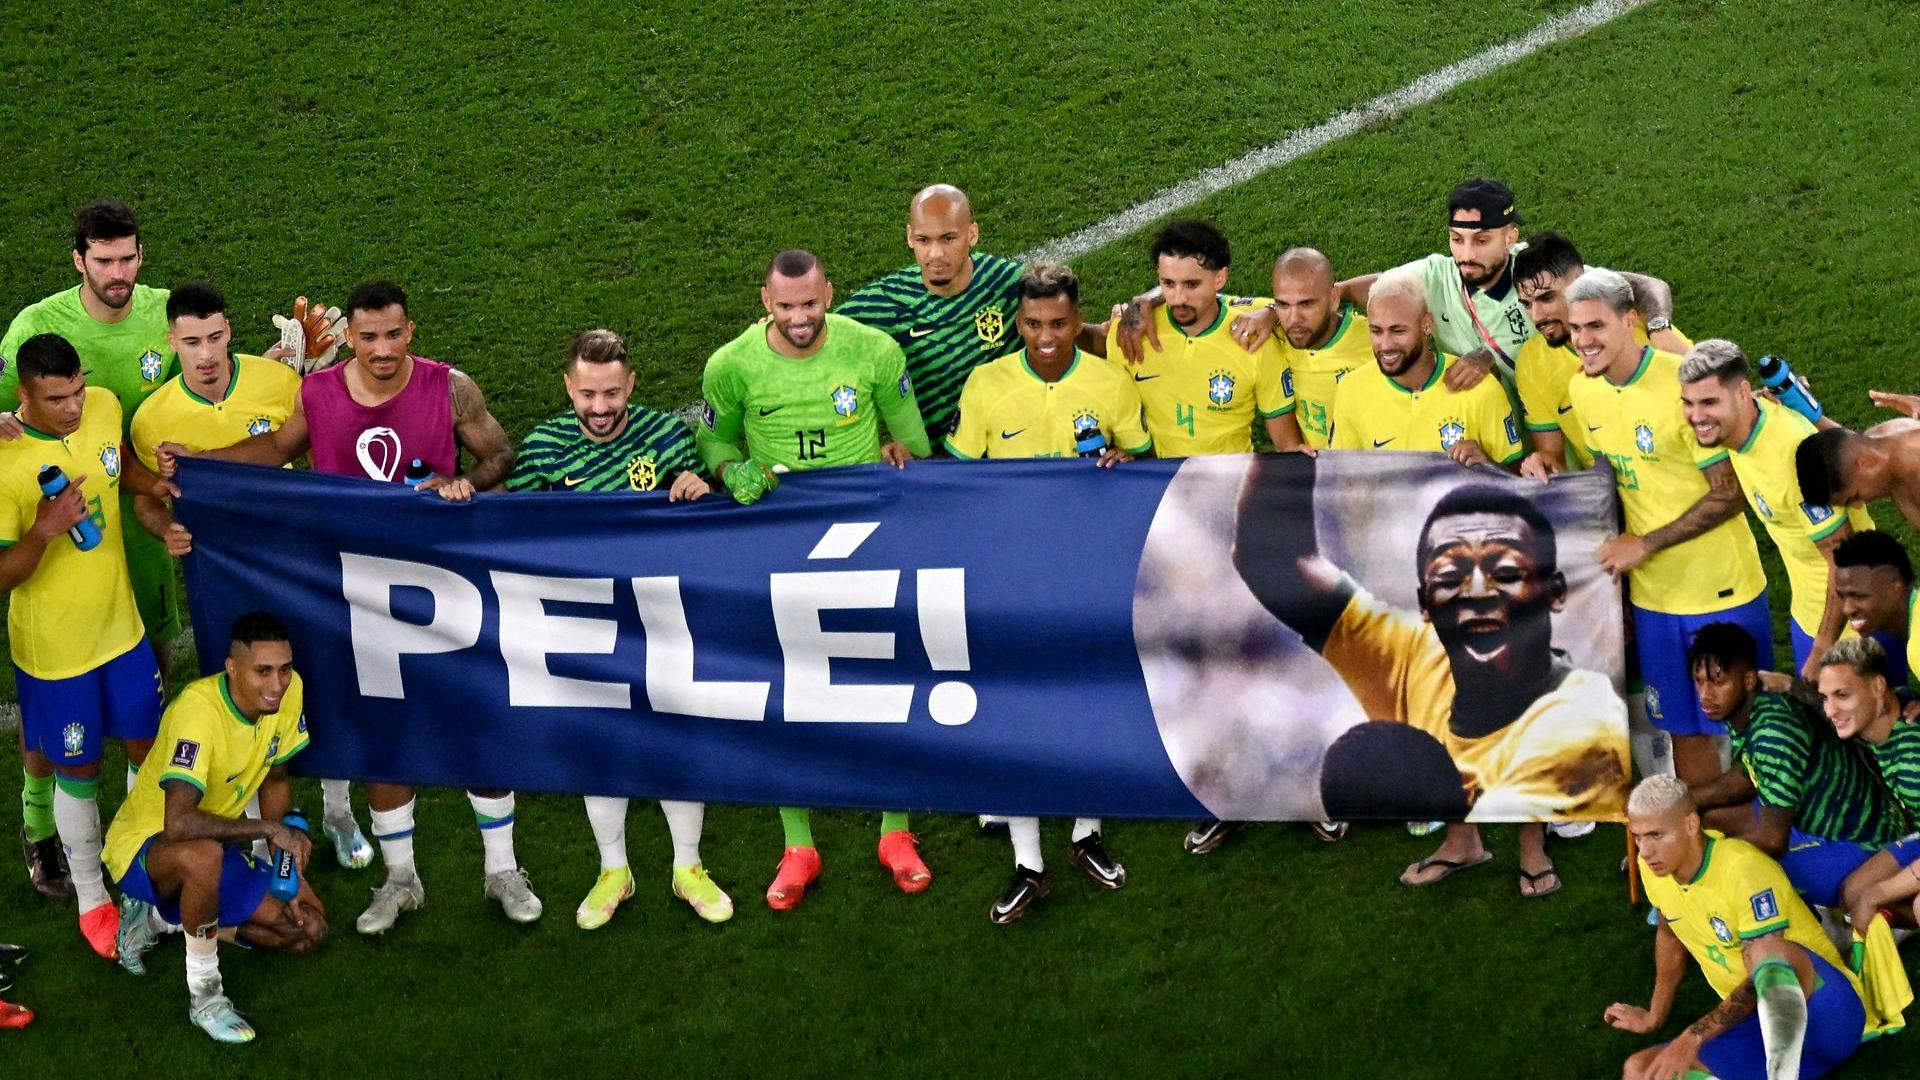 Spillere og fans hylder Pelé.